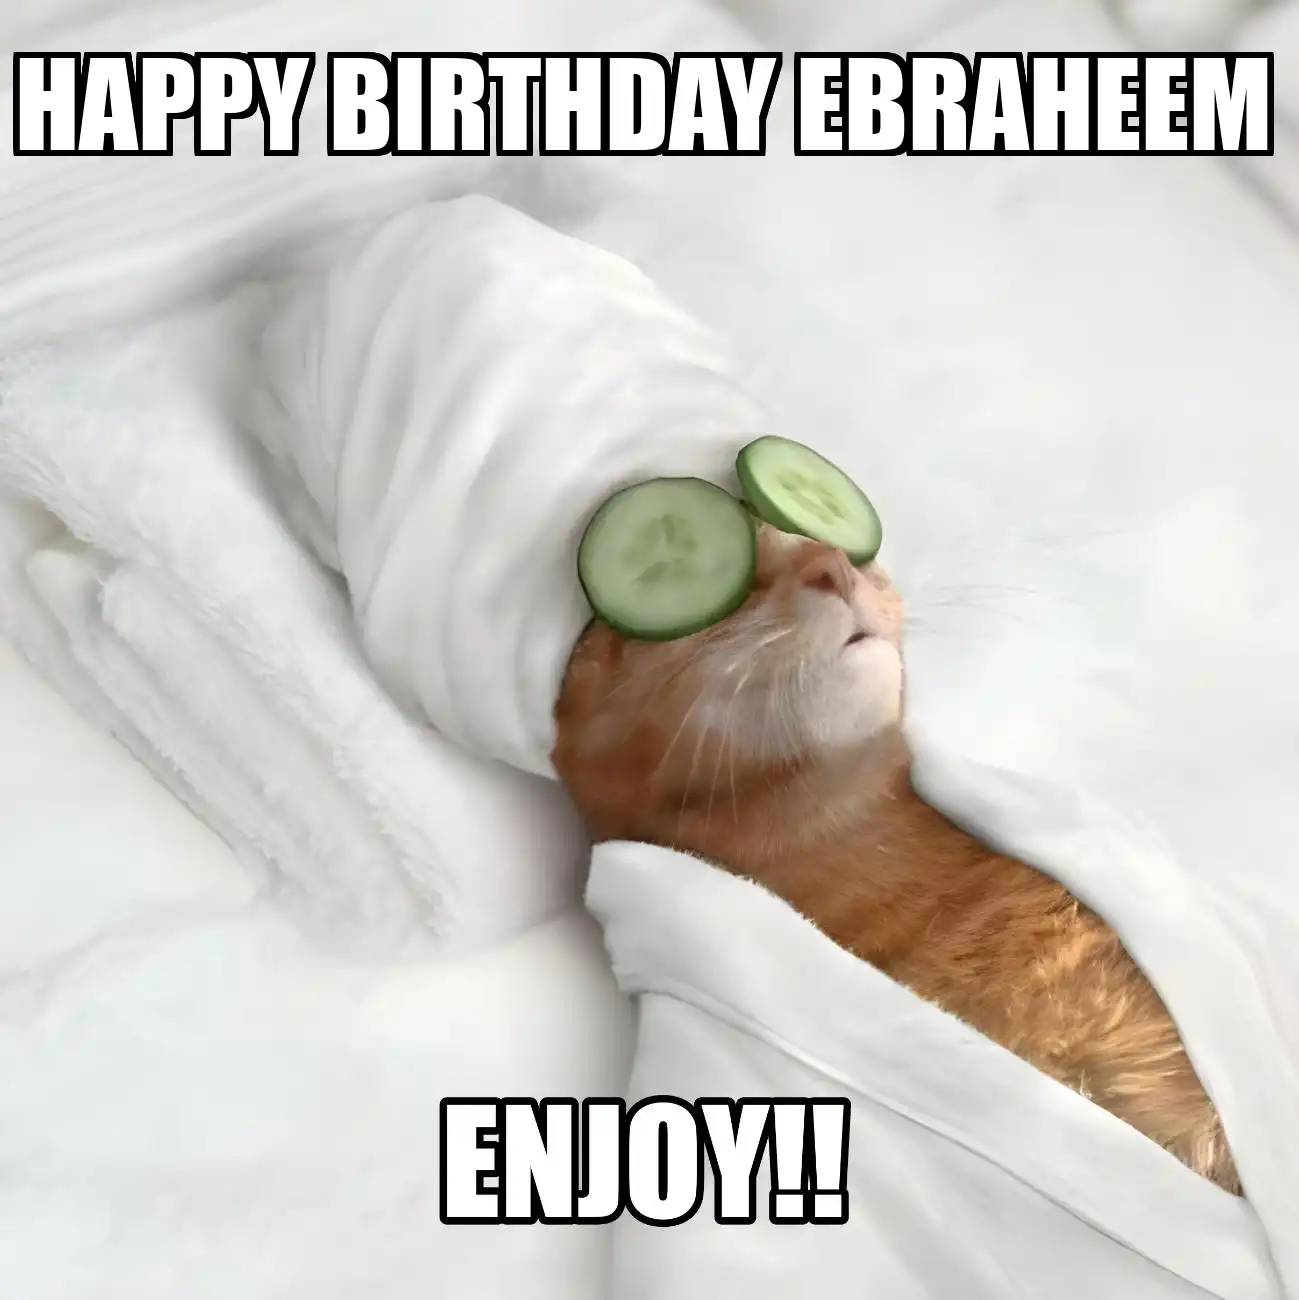 Happy Birthday Ebraheem Enjoy Cat Meme